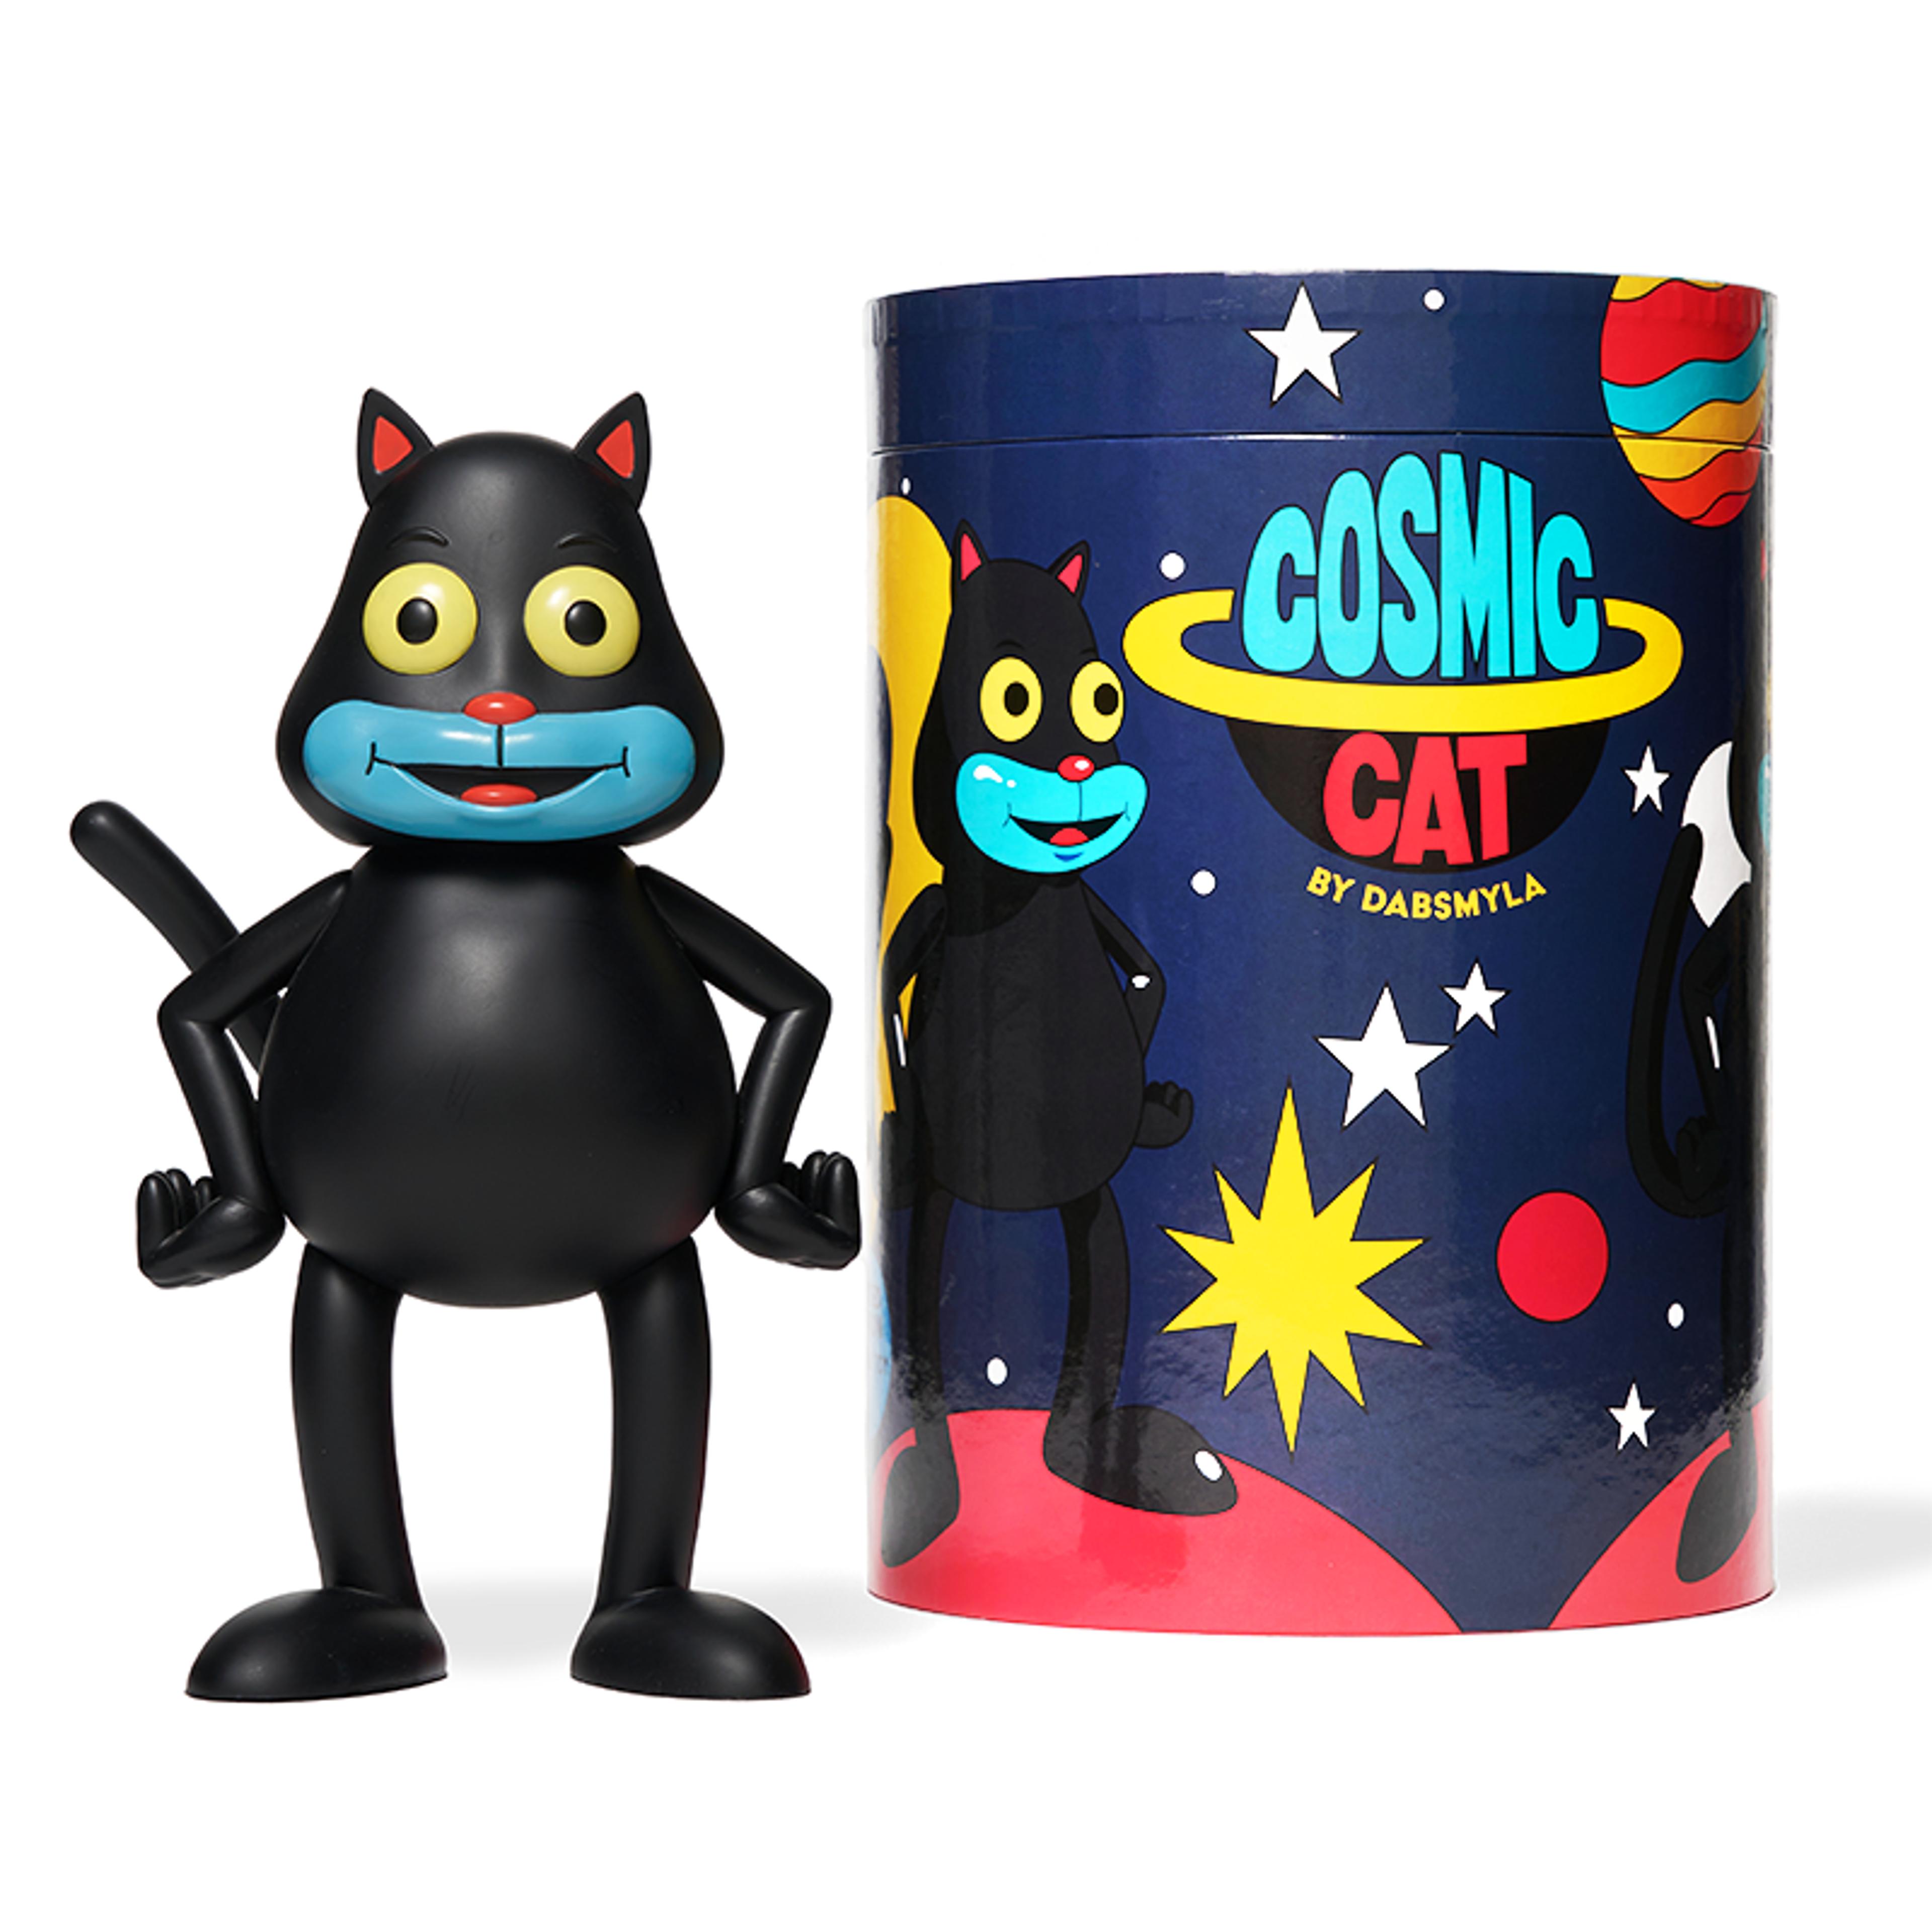 Cosmic Cat figure by DABSMYLA (Black)